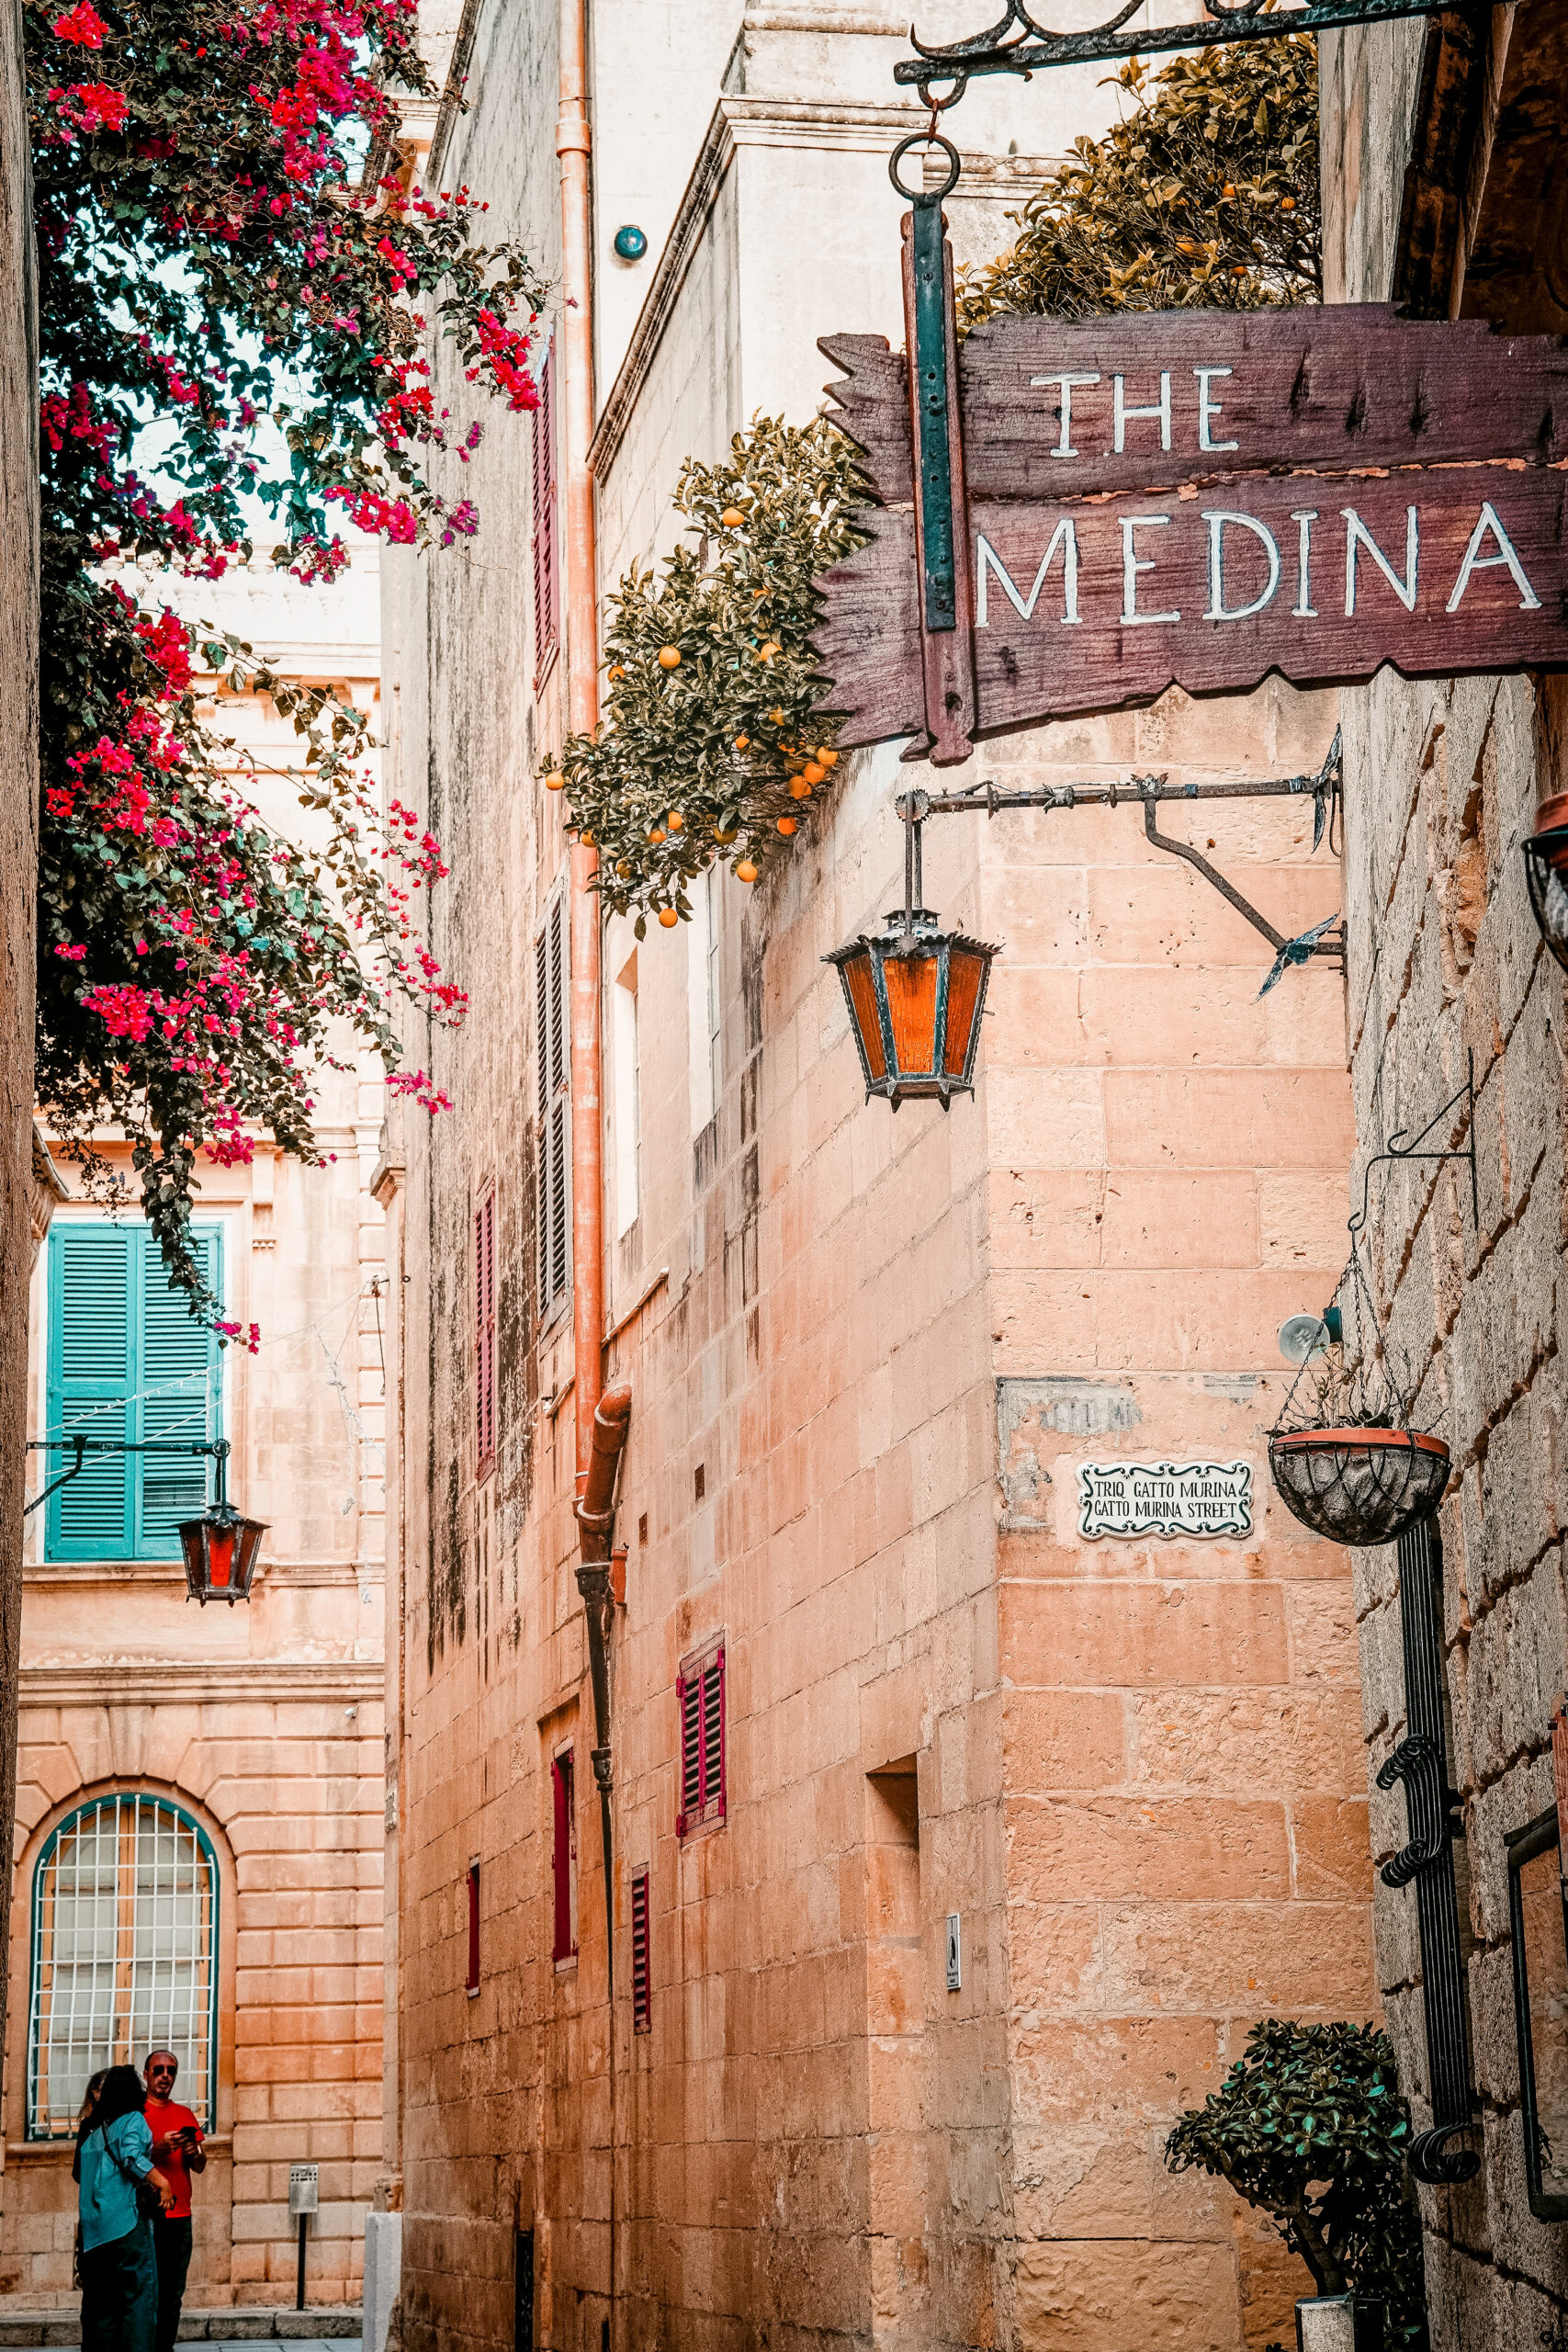 Narrow Gatto Murina street (Triq Gatto Murina) in the old town of Mdina, Malta